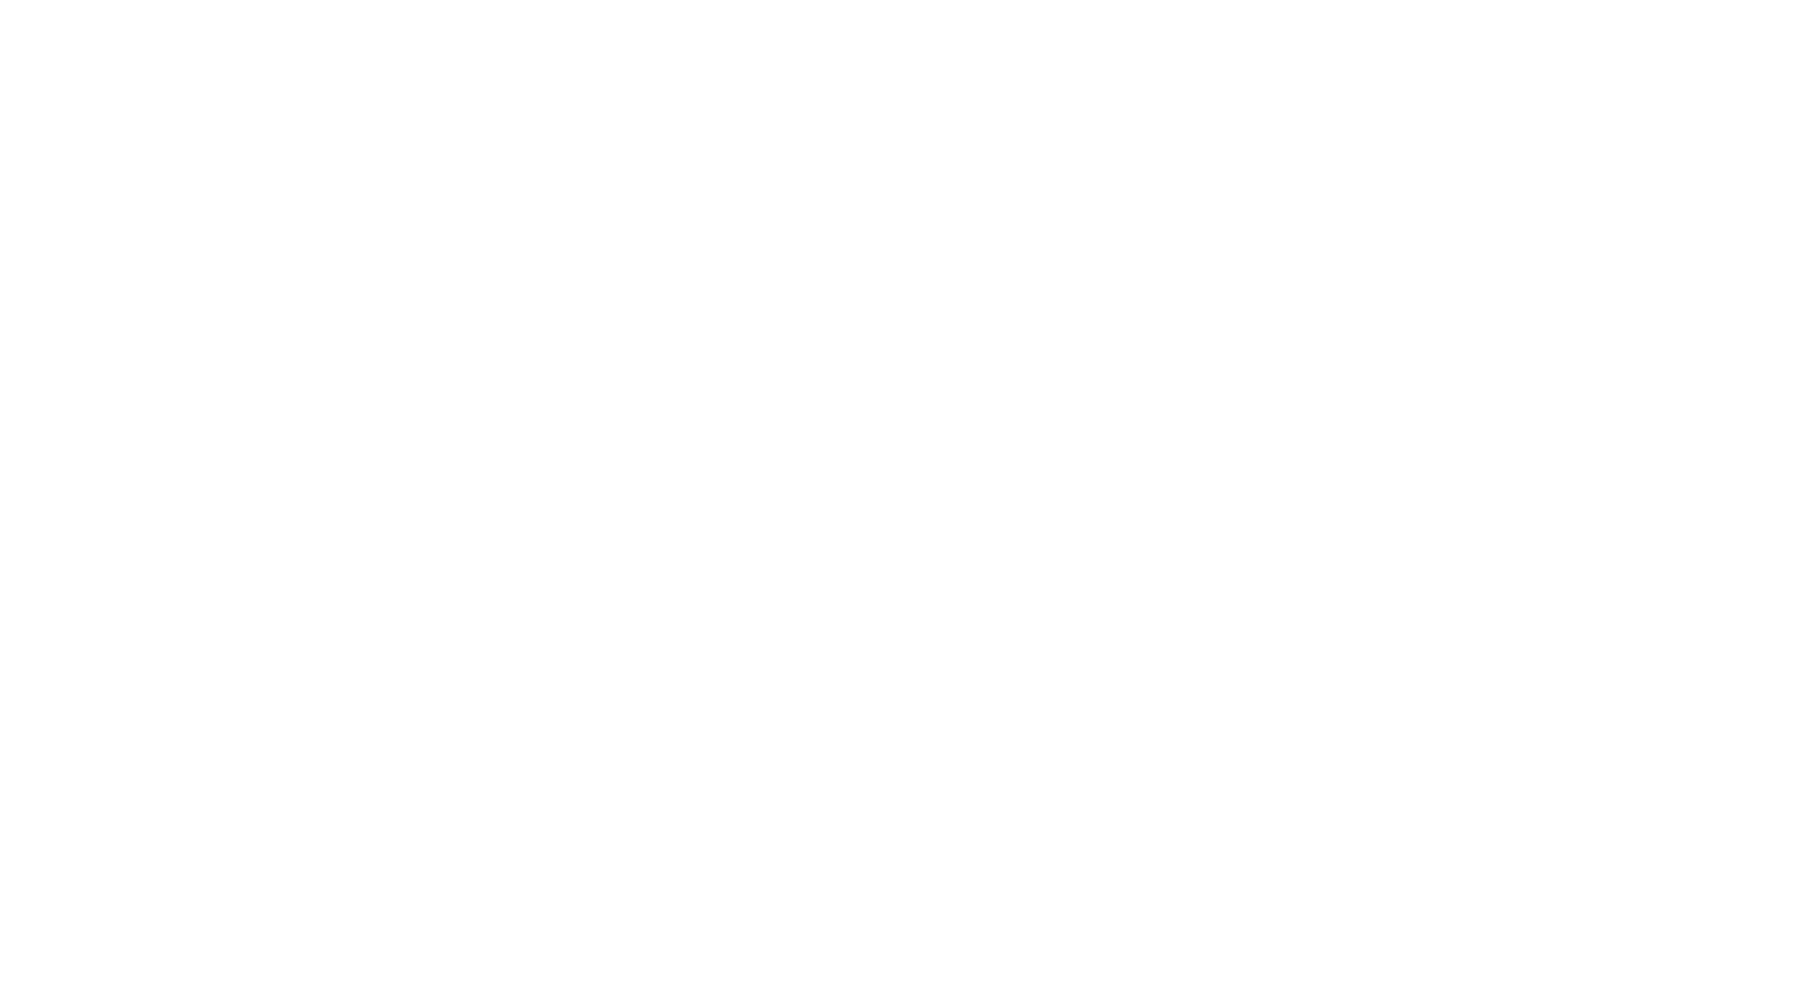 I Kissed a Boy